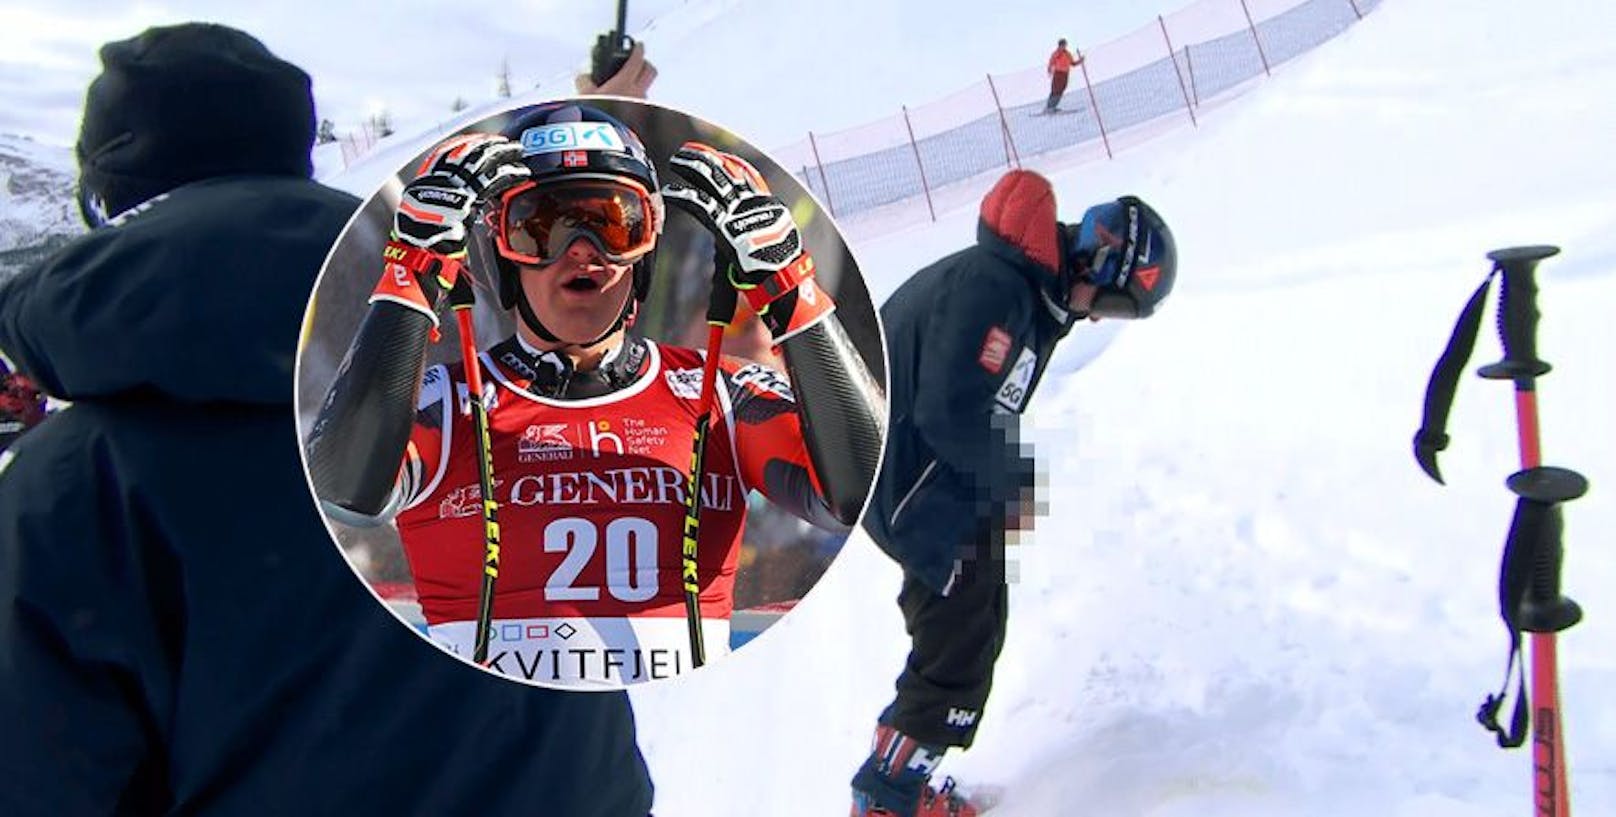 Ski-Star über Penis-Panne: "Hoffte, es schaut gut aus"